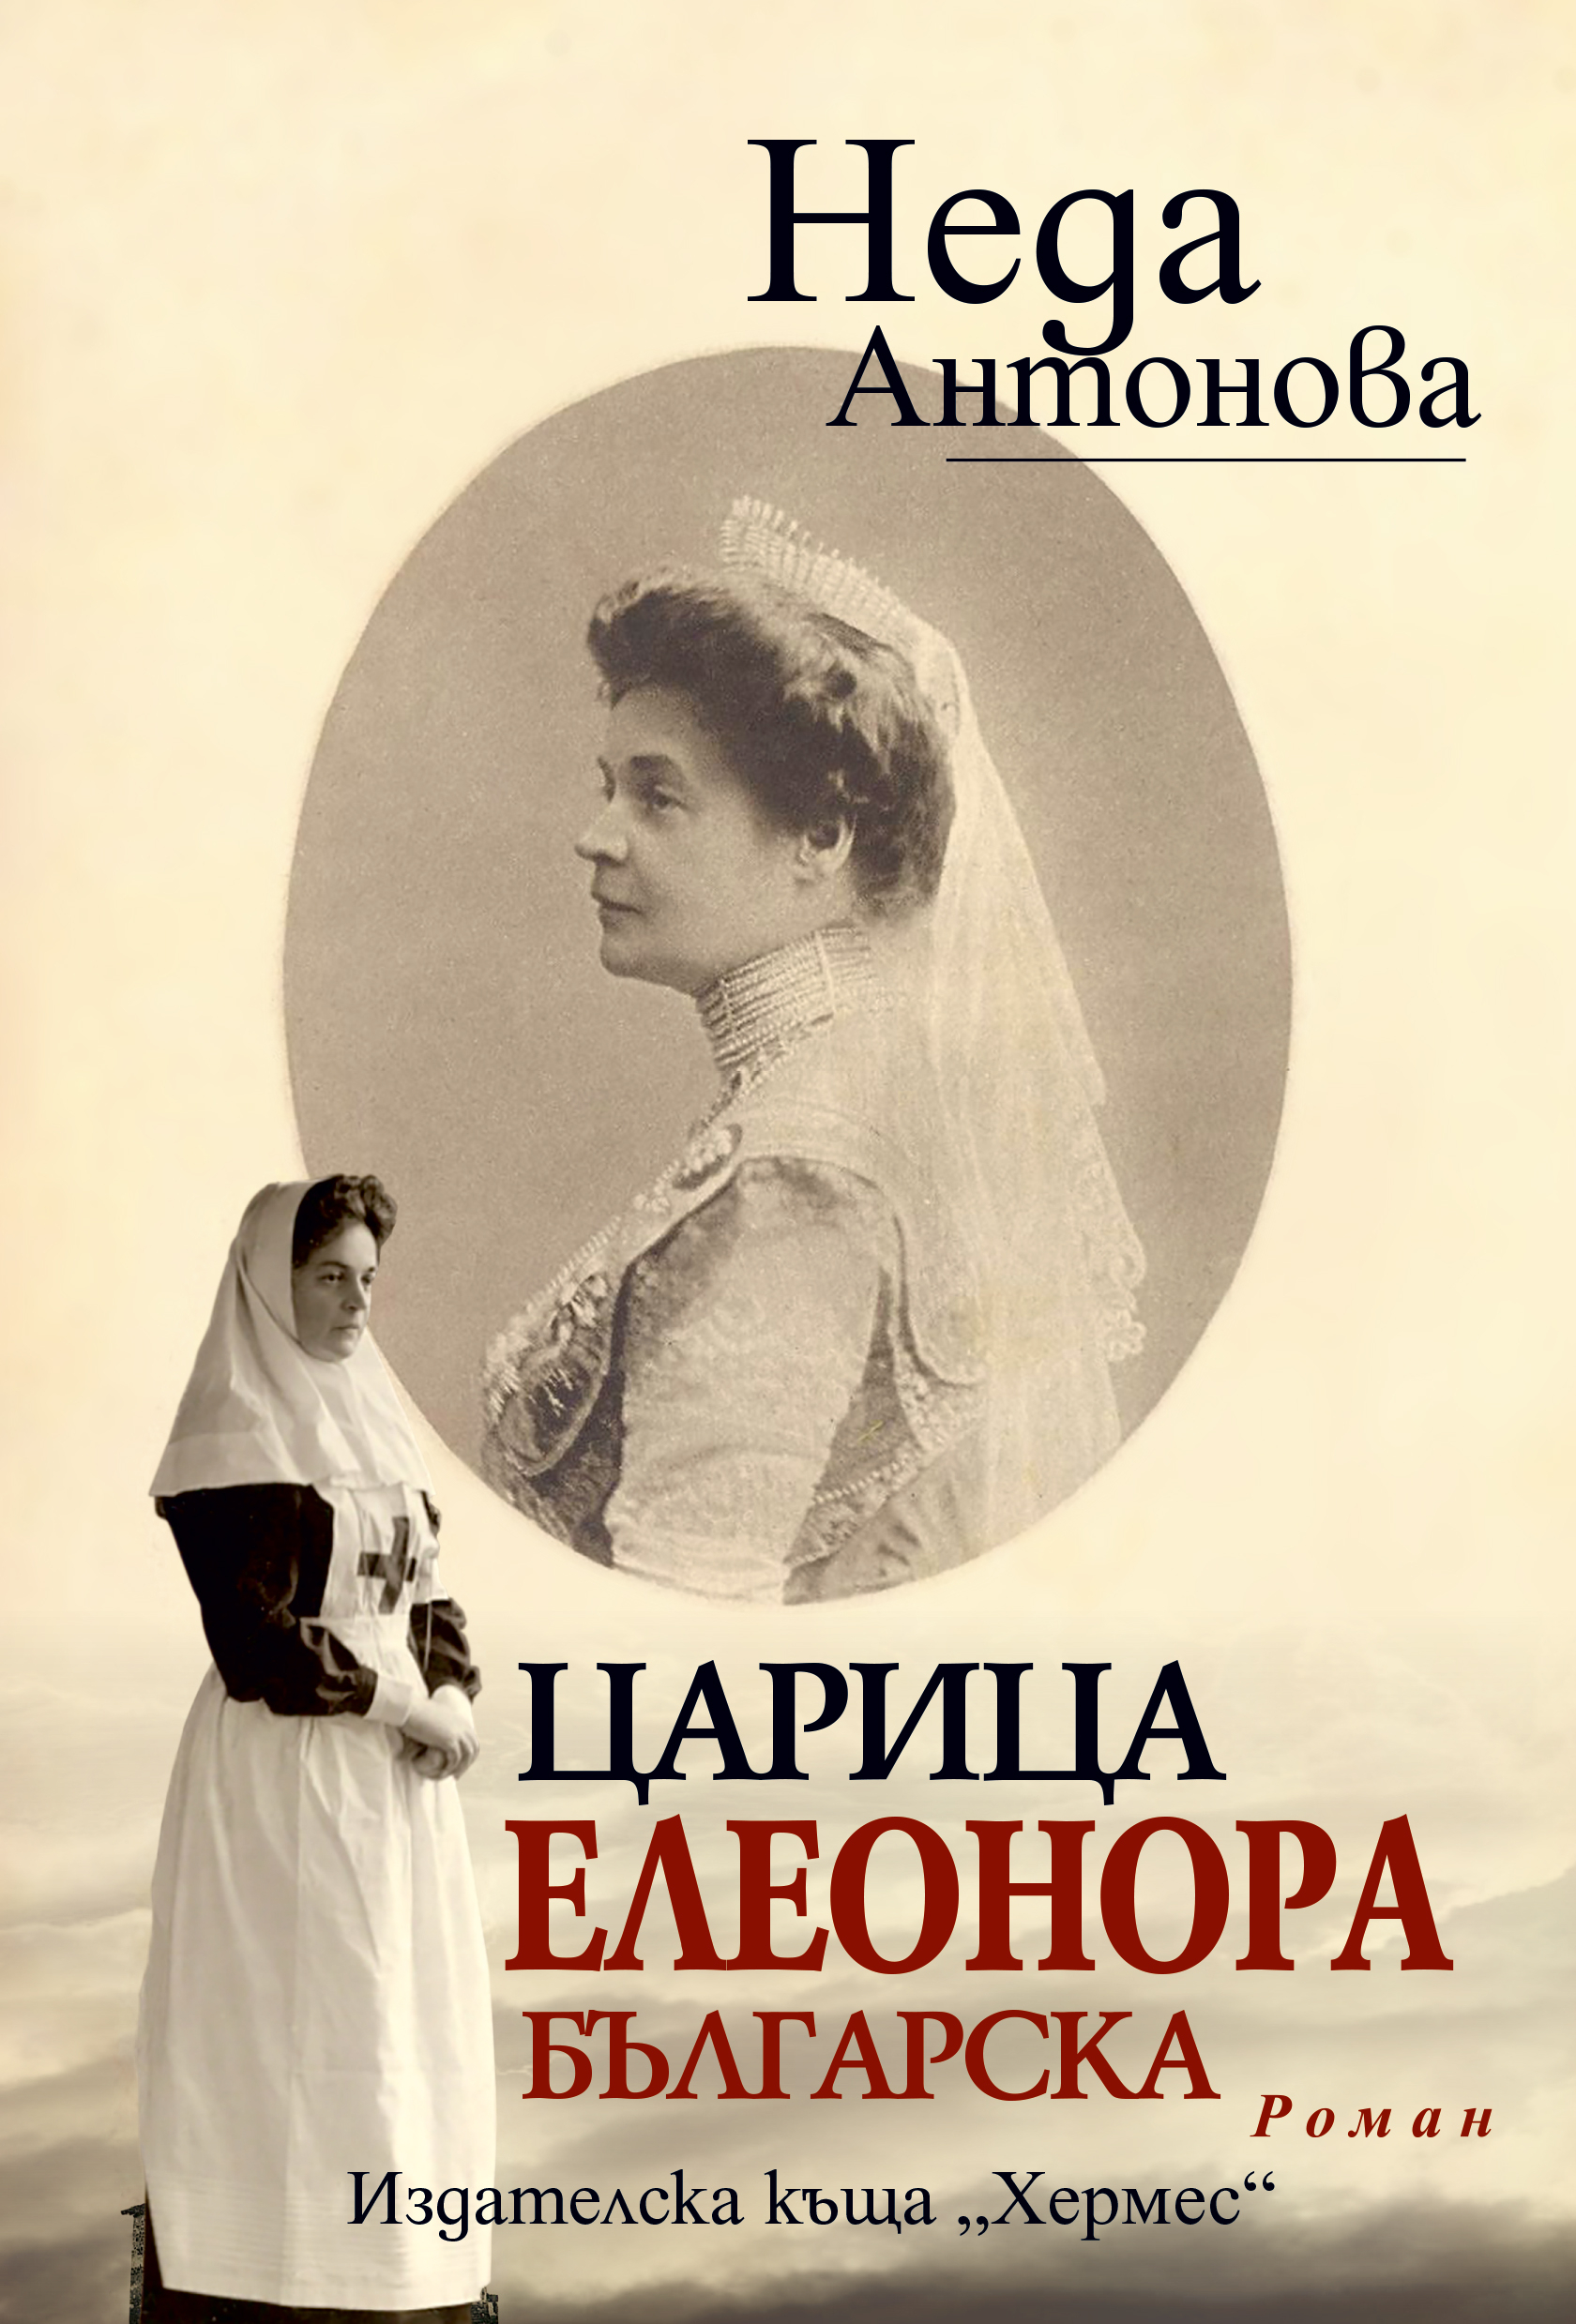 За вдъхновяващата царица Елеонора Българска с едноименния роман на Неда Антонова